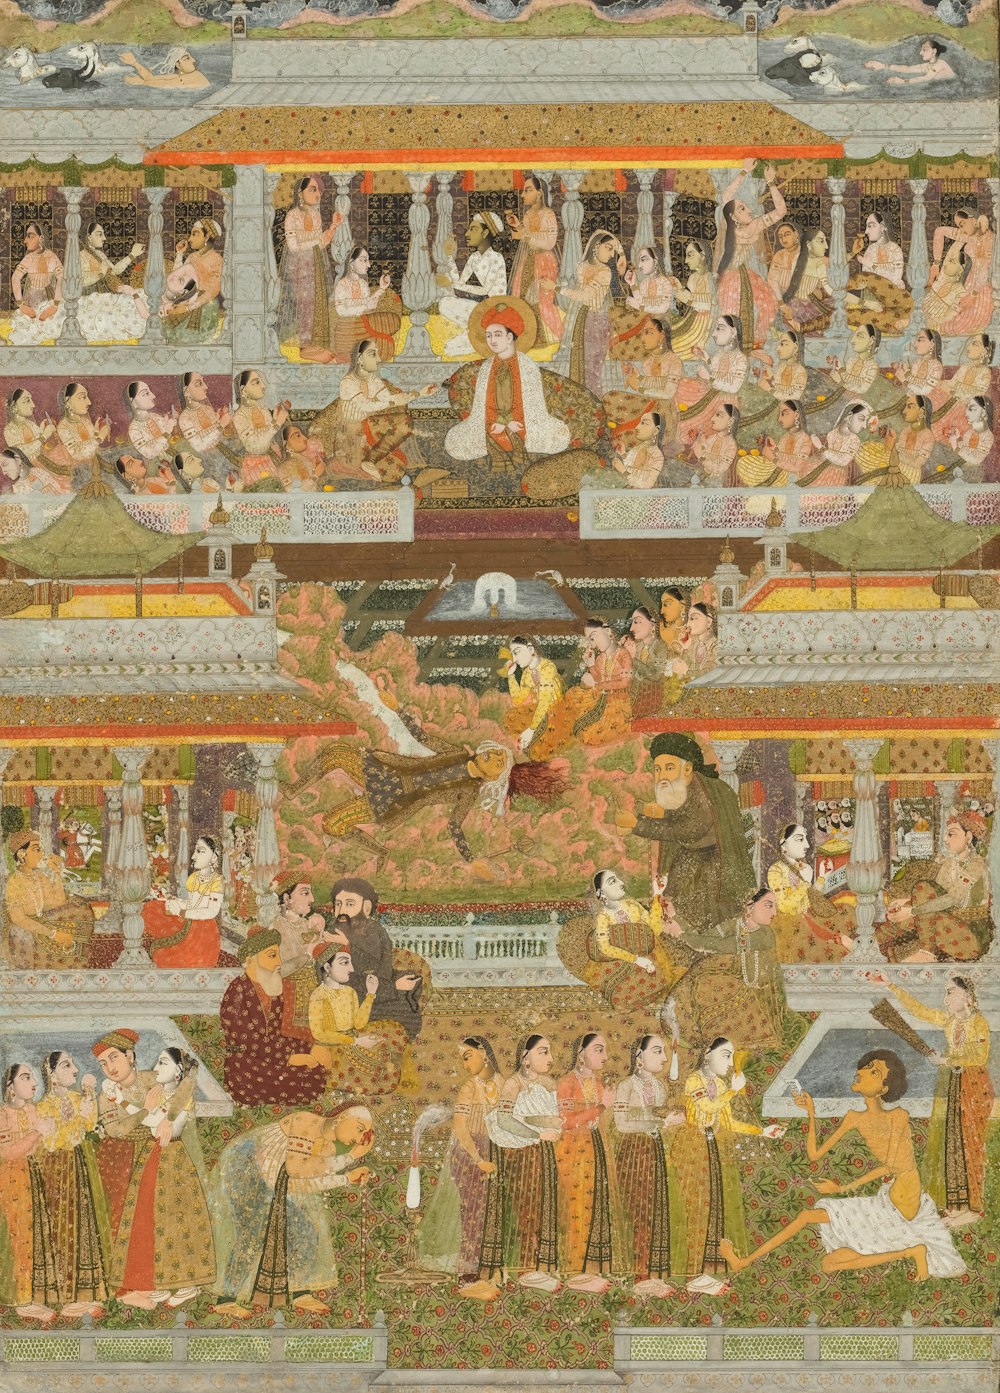 宮殿に集まる人々の姿を描いた絵画